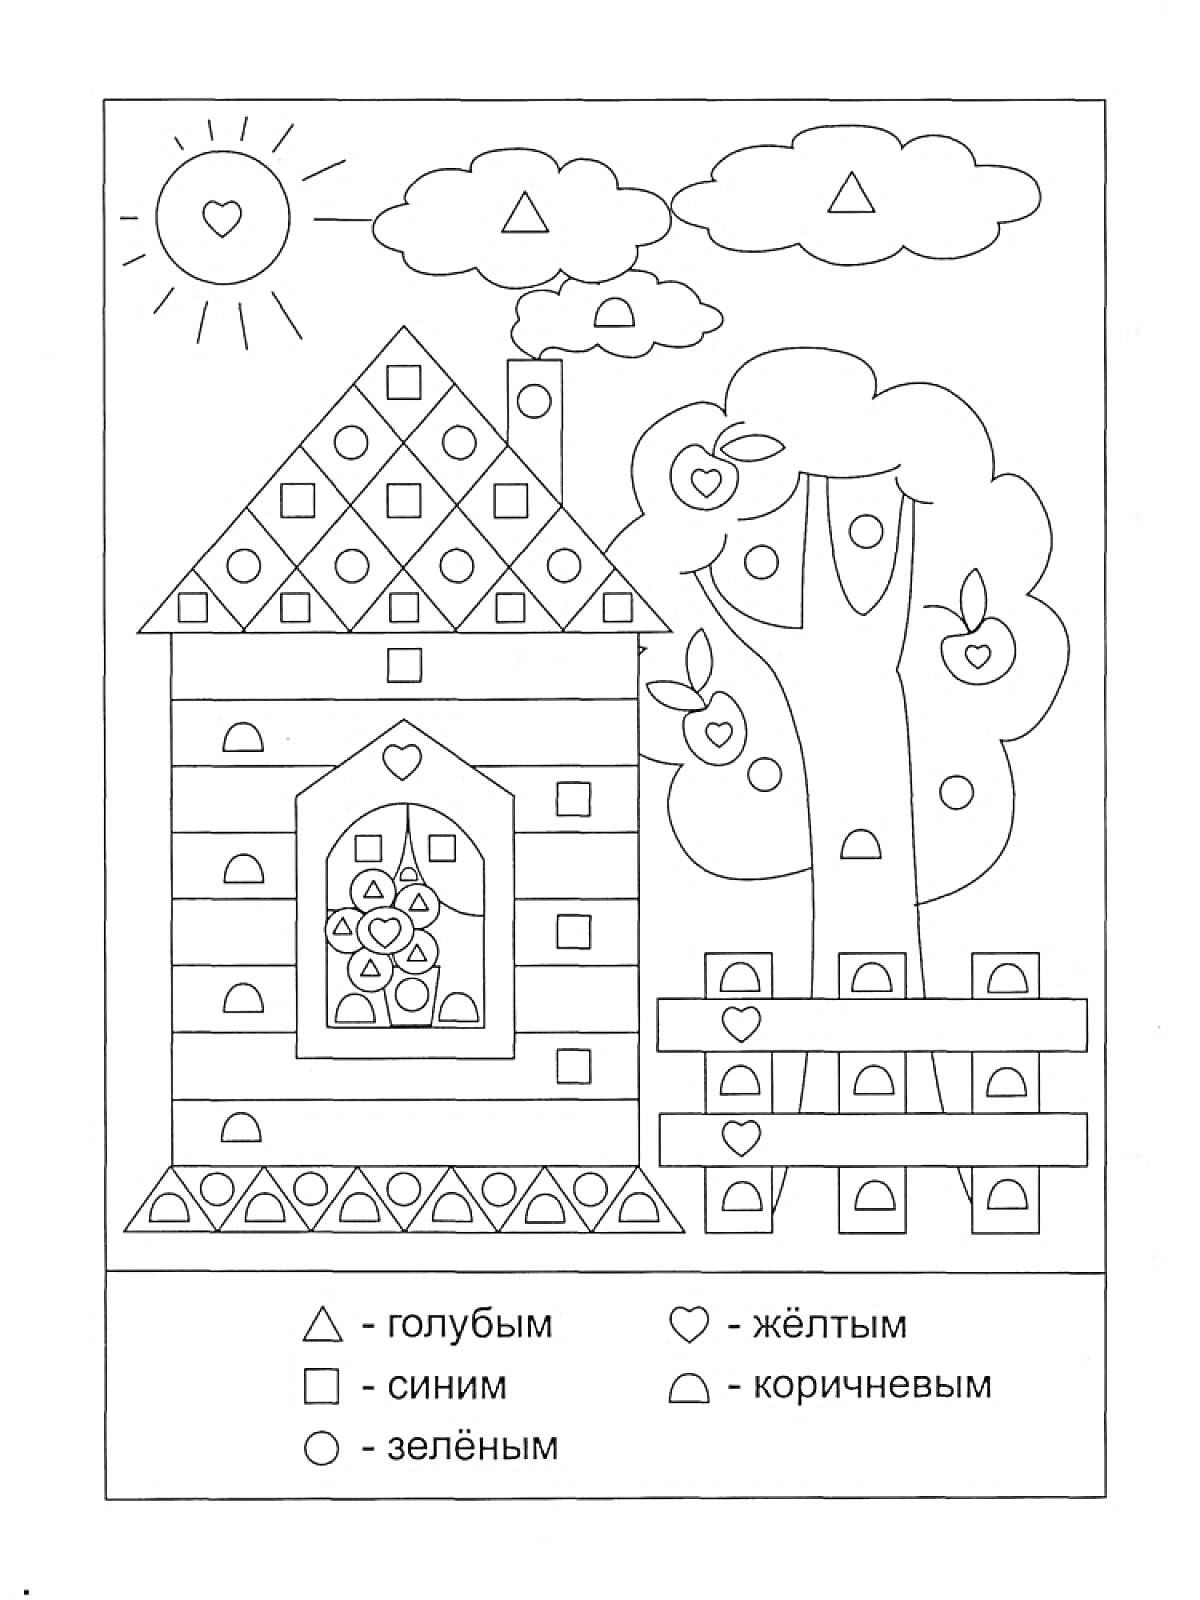 На раскраске изображено: Дом, Яблоня, Забор, Солнце, Облака, Геометрические фигуры, Треугольники, Квадраты, Круги